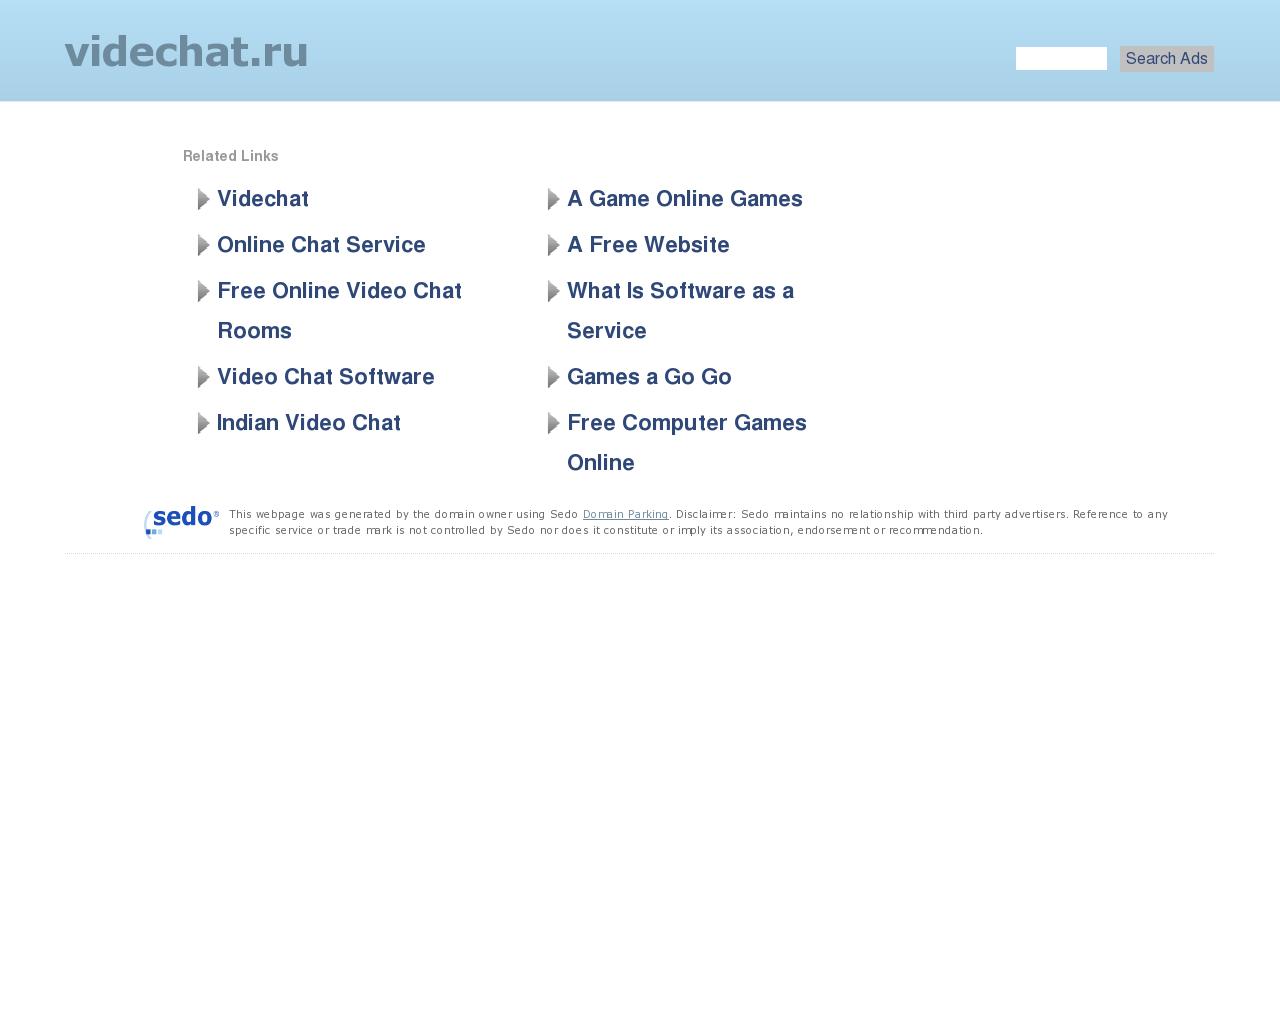 Изображение сайта videchat.ru в разрешении 1280x1024